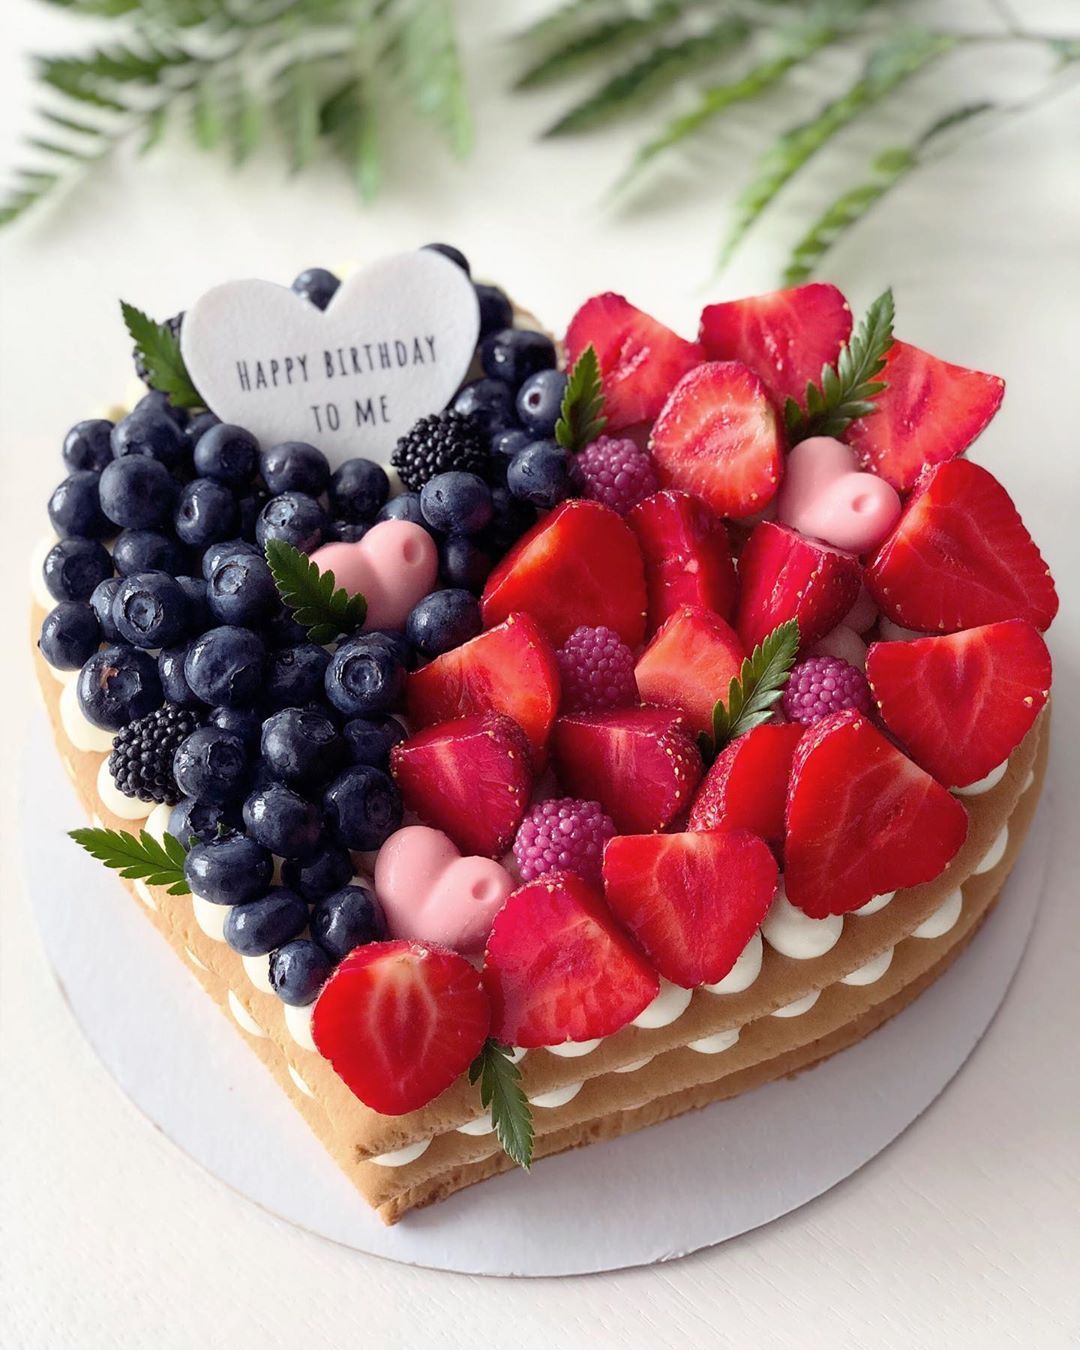 Торт сердце с ягодами